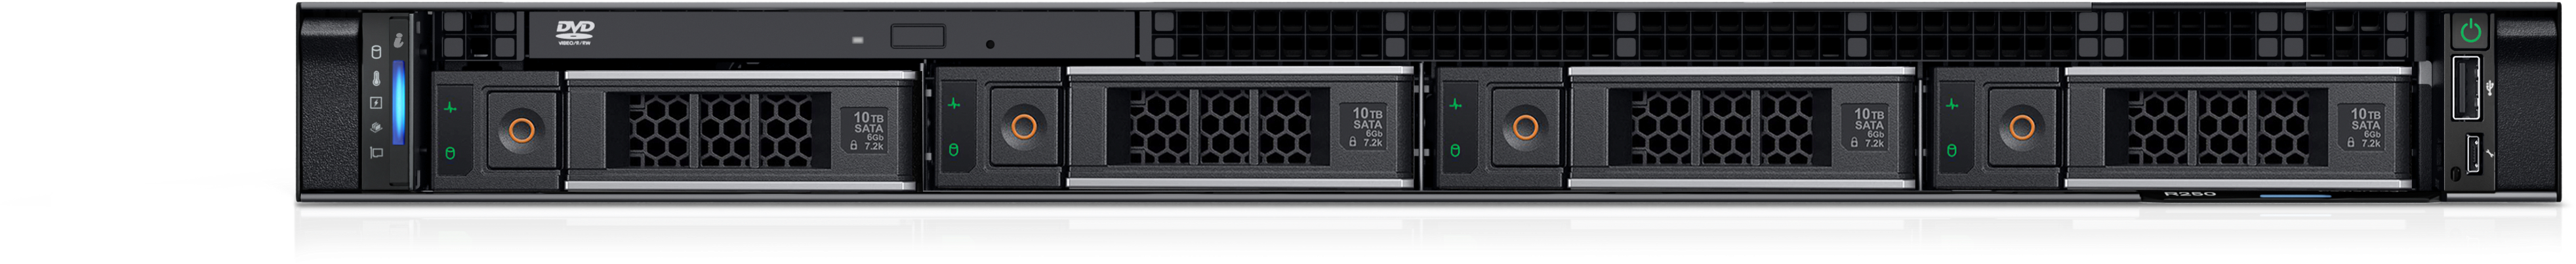 Dell PowerEdge R250 Rack Server (R250-E2324G-8GB-2T-755-3YNBD)